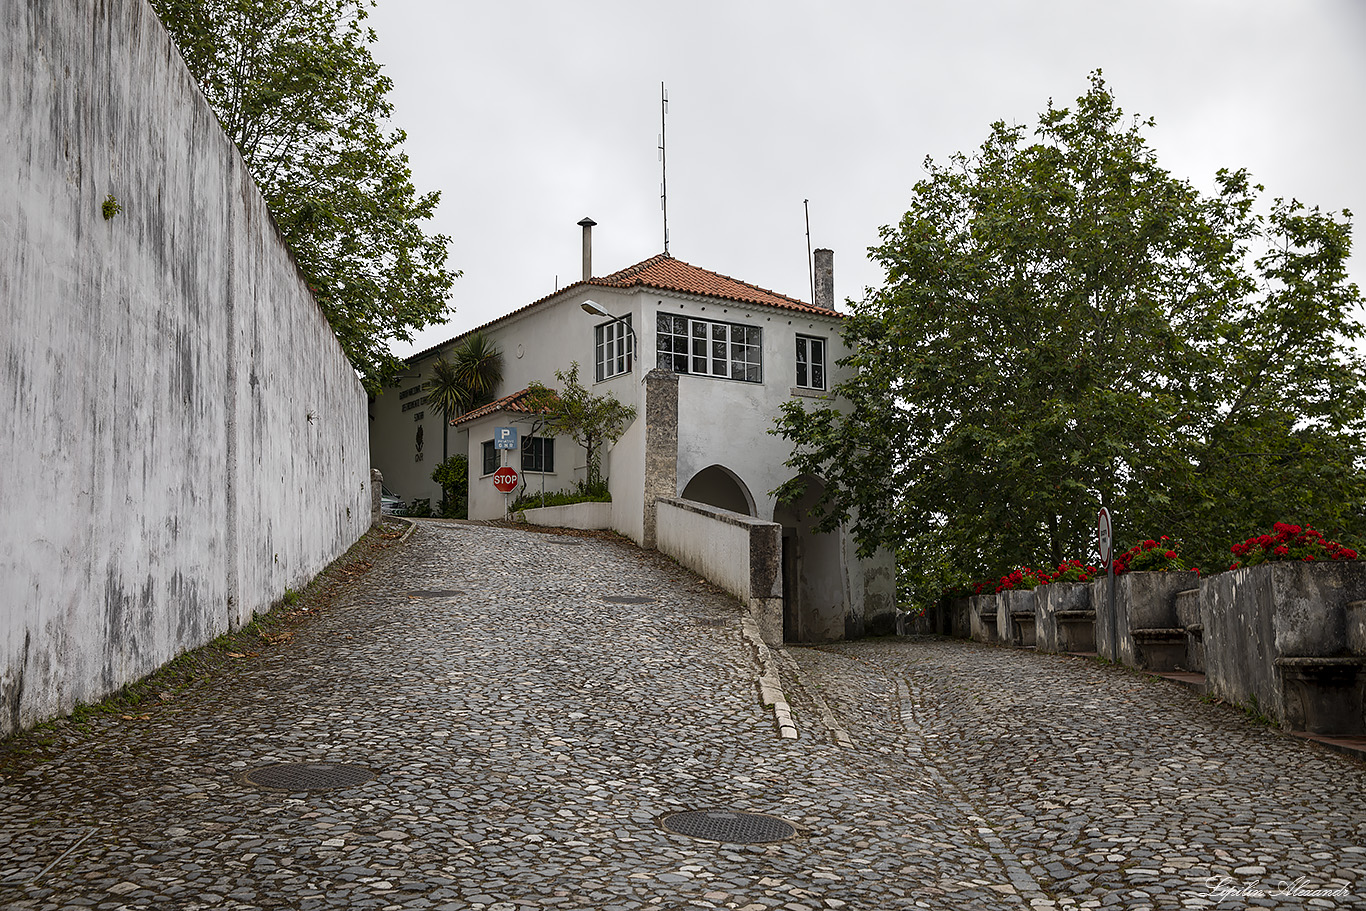 Синтра (Sintra) - Португалия (Portugal)